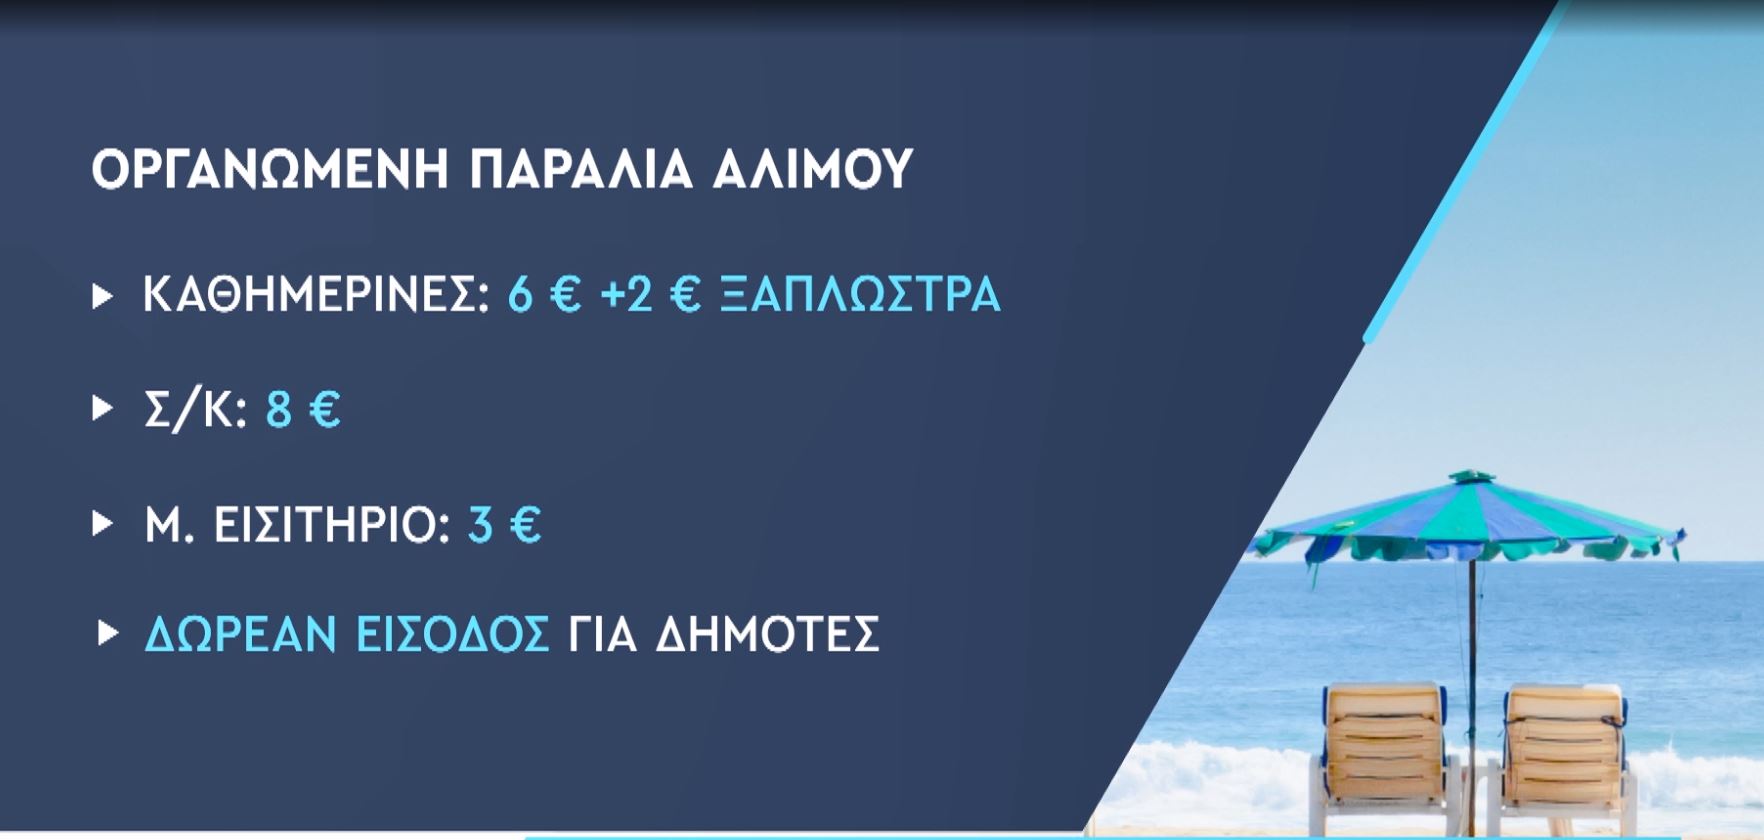 Πόσο κοστίζει μια βουτιά στις οργανωμένες παραλίες της Αττικής – Πίνακες με τιμές